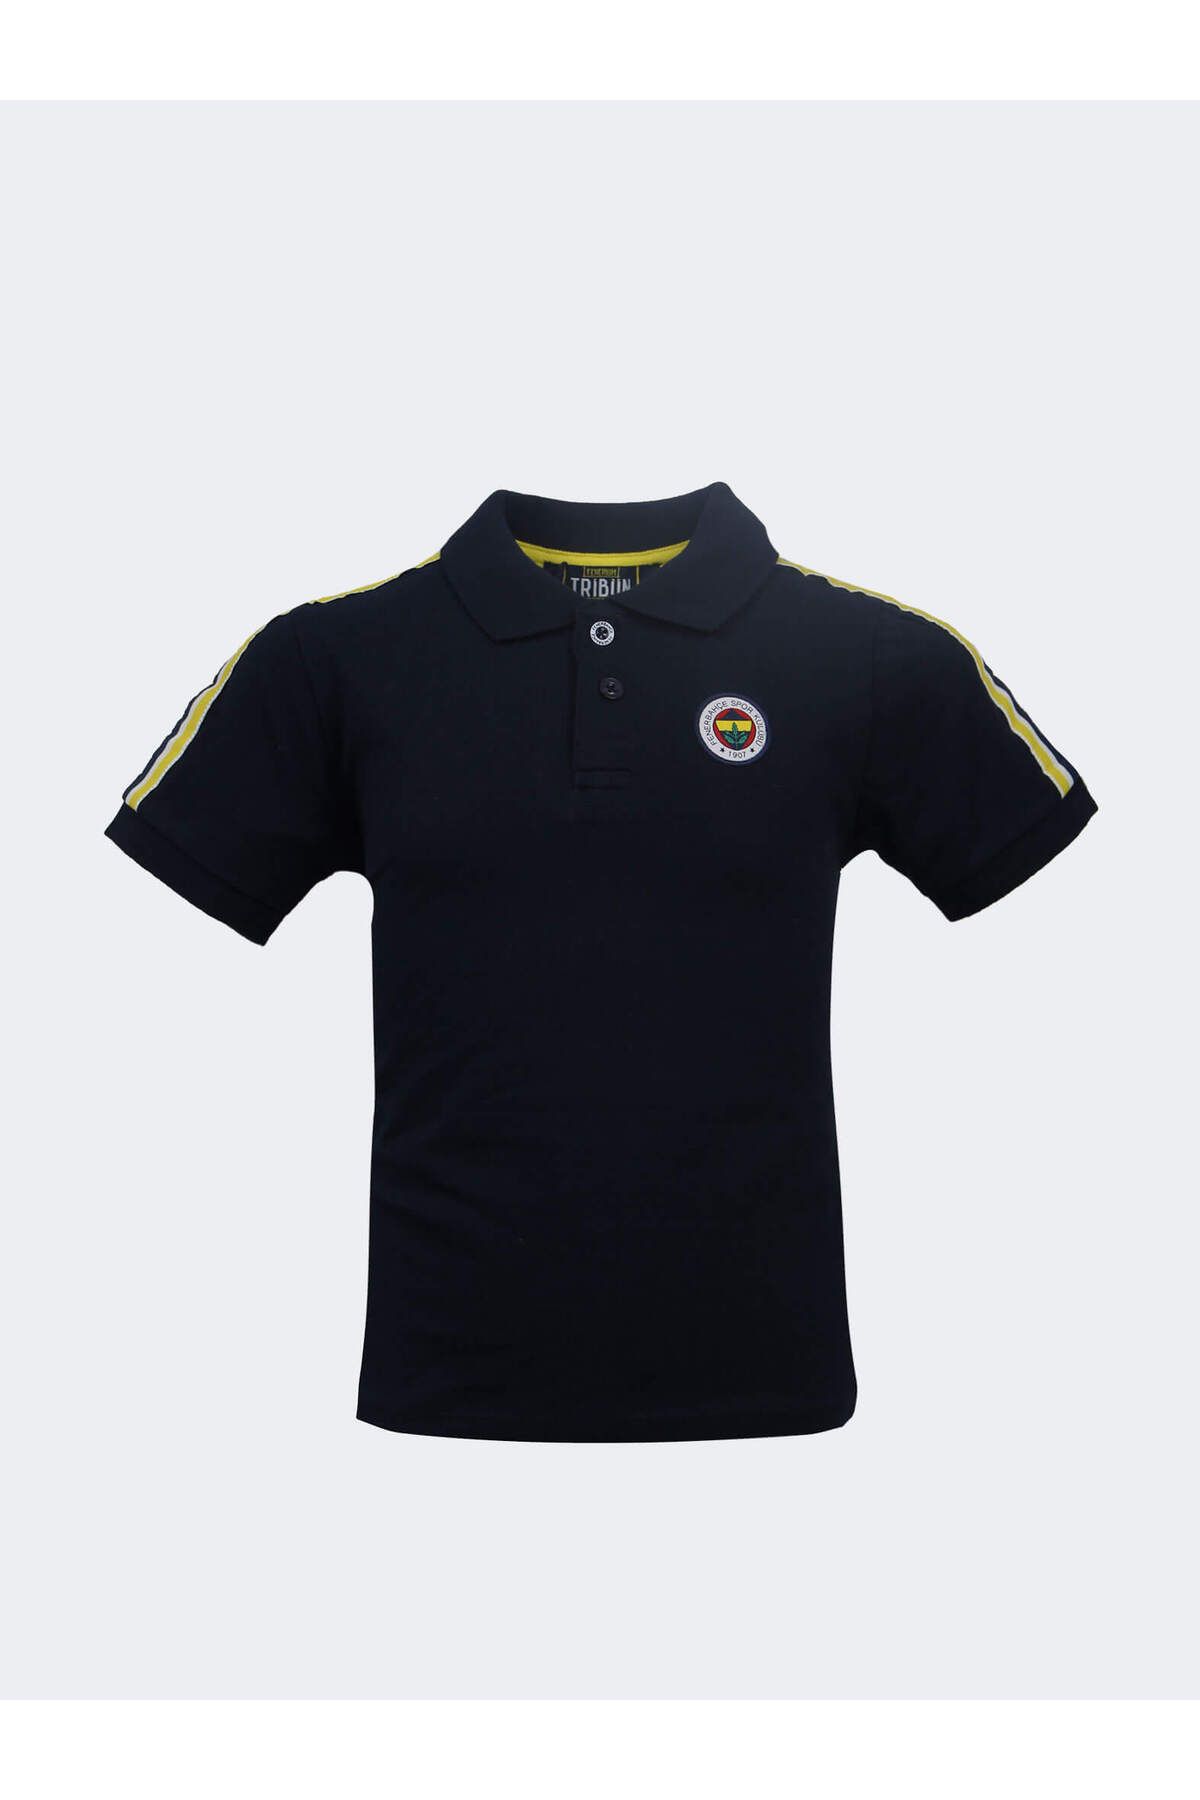 Fenerbahçe ÇOCUK TRIBUN BASIC POLO